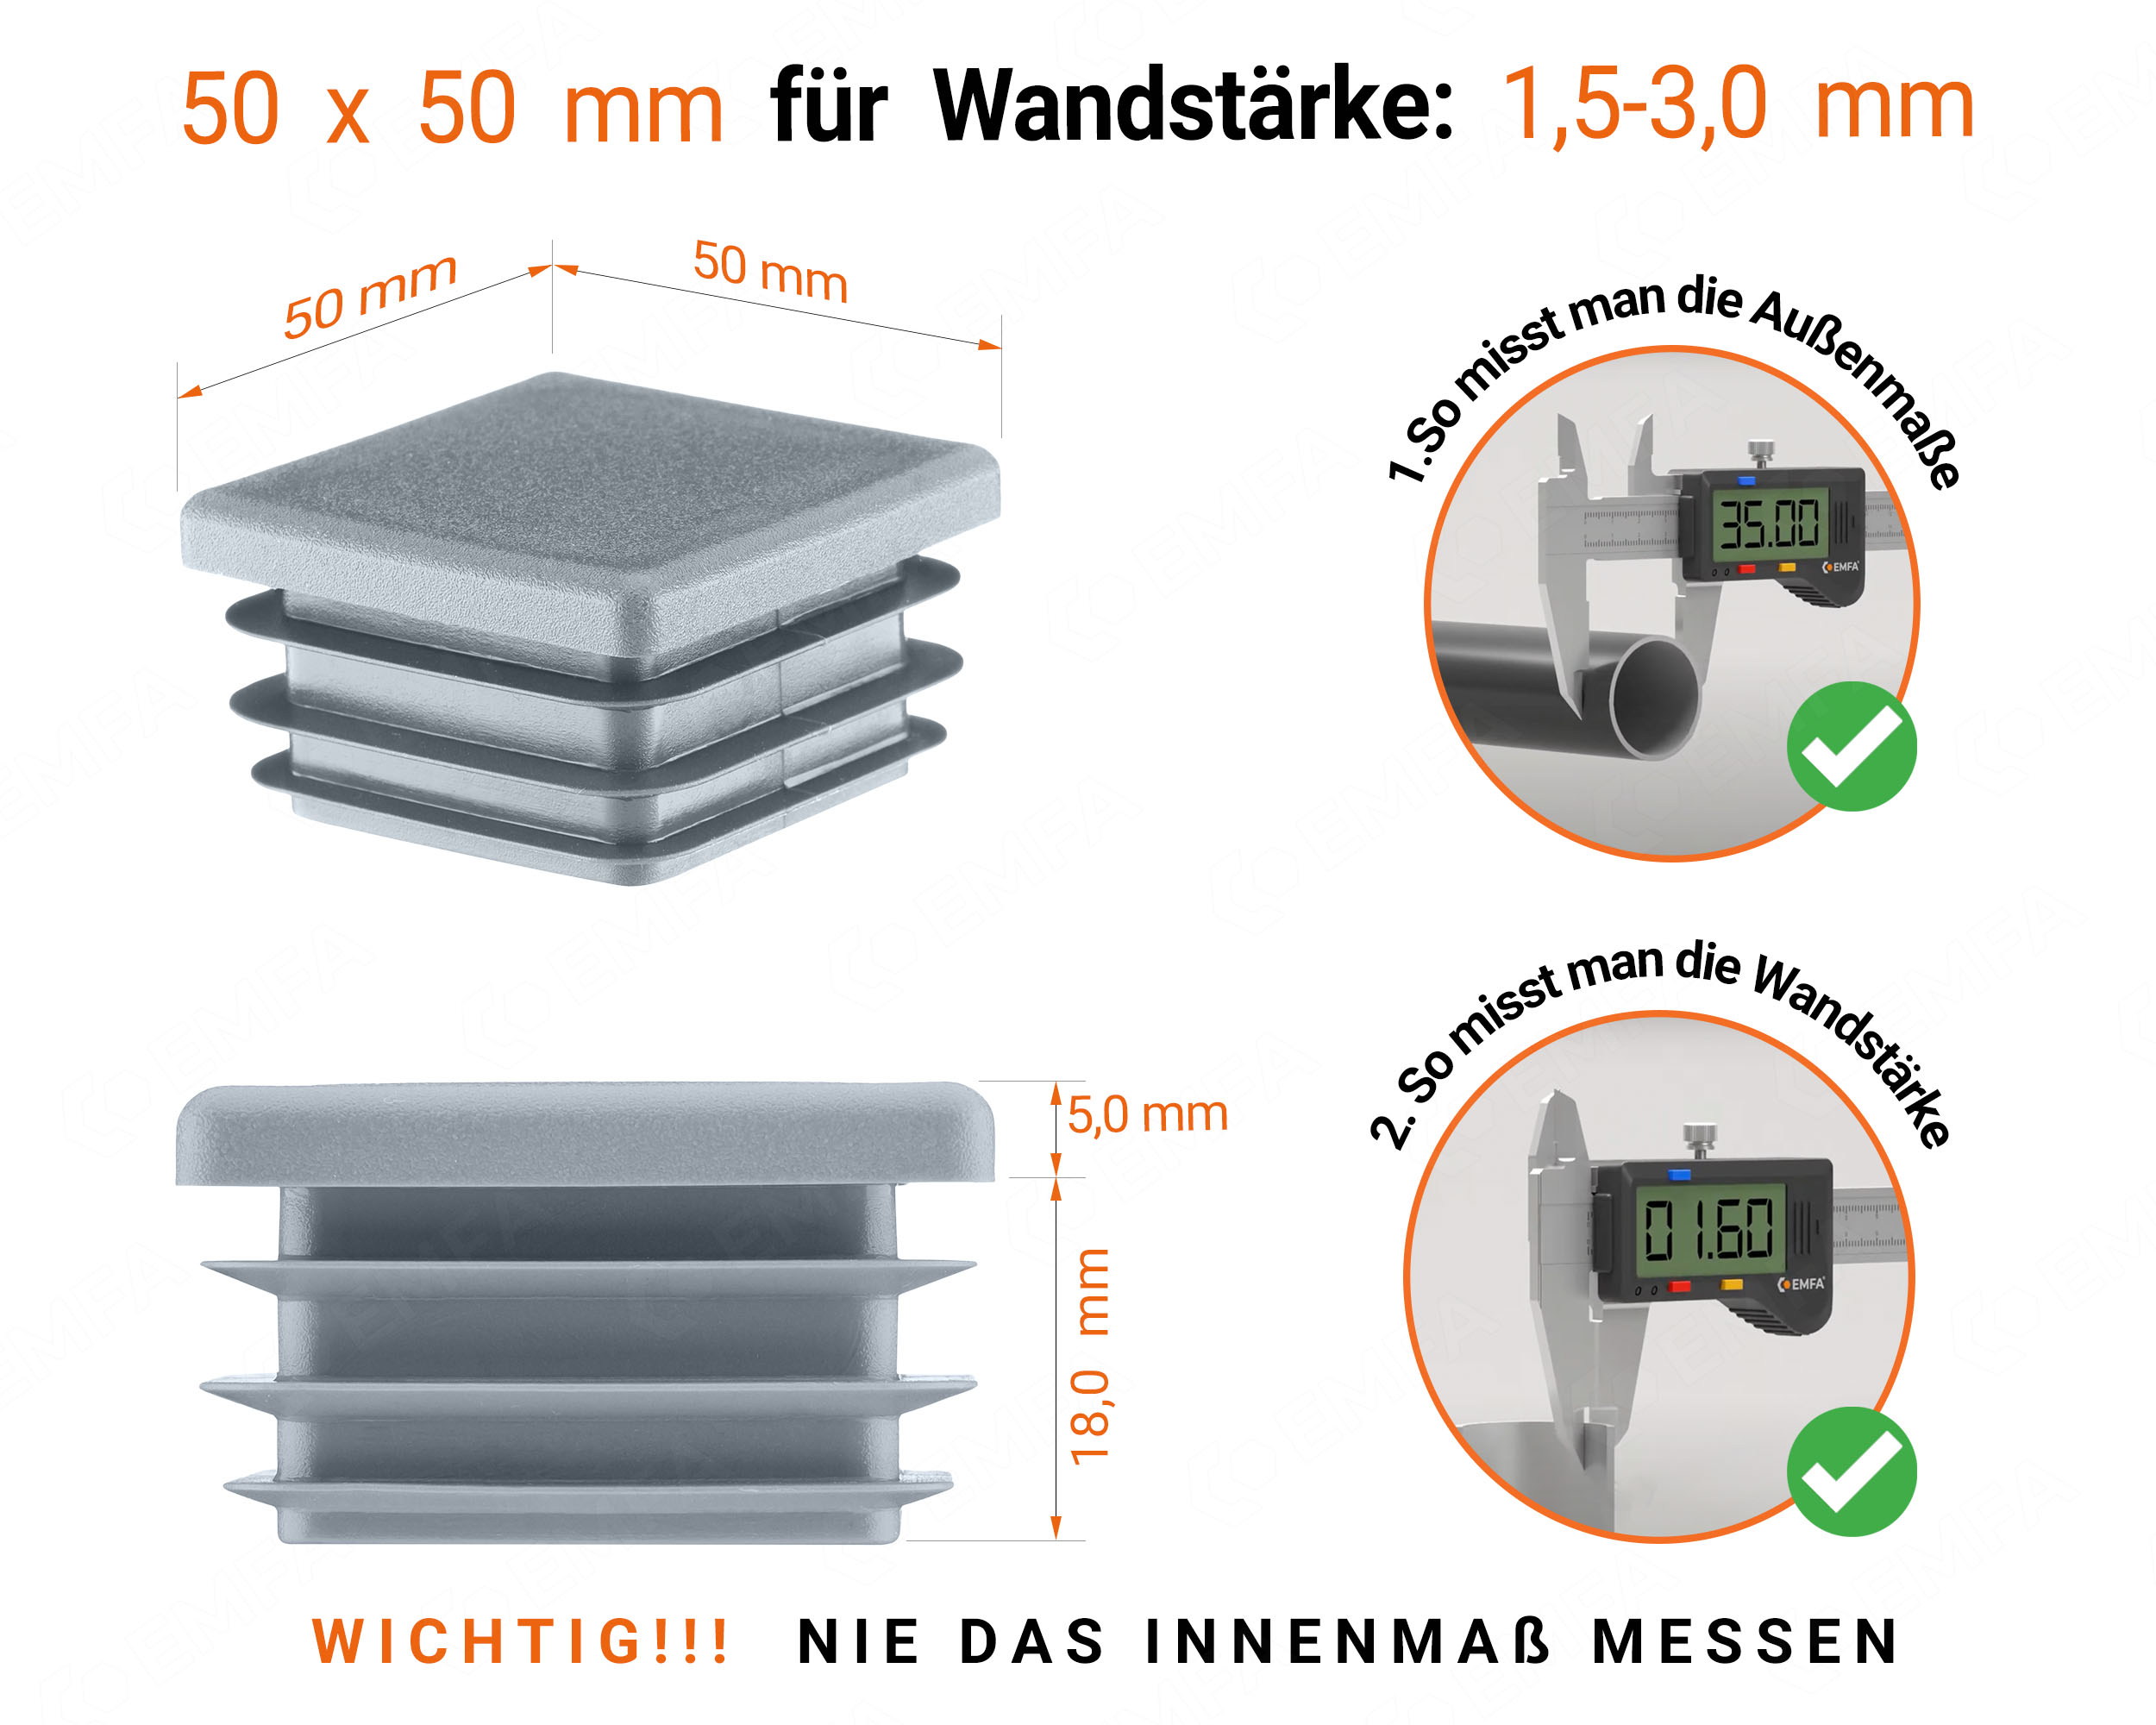 Grau Endkappe für Vierkantrohre in der Größe 50x50 mm mit technischen Abmessungen und Anleitung für korrekte Messung